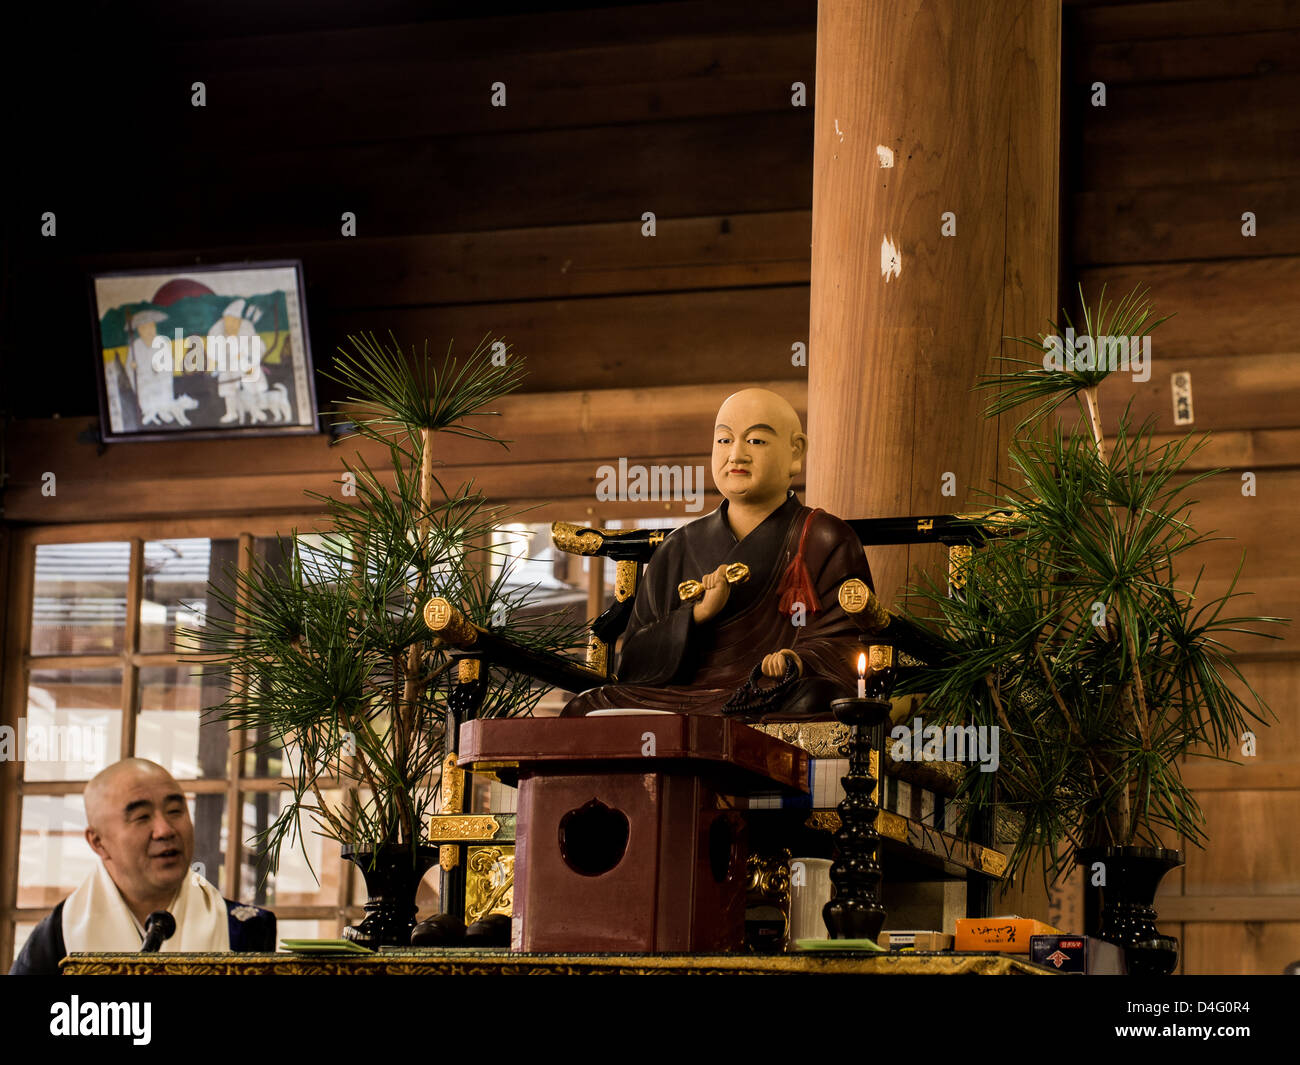 Un prêtre bouddhiste Shingon prêche aux pèlerins à côté d'une image de Kobo Daishi, fondateur de l'école Shingon du bouddhisme. Banque D'Images